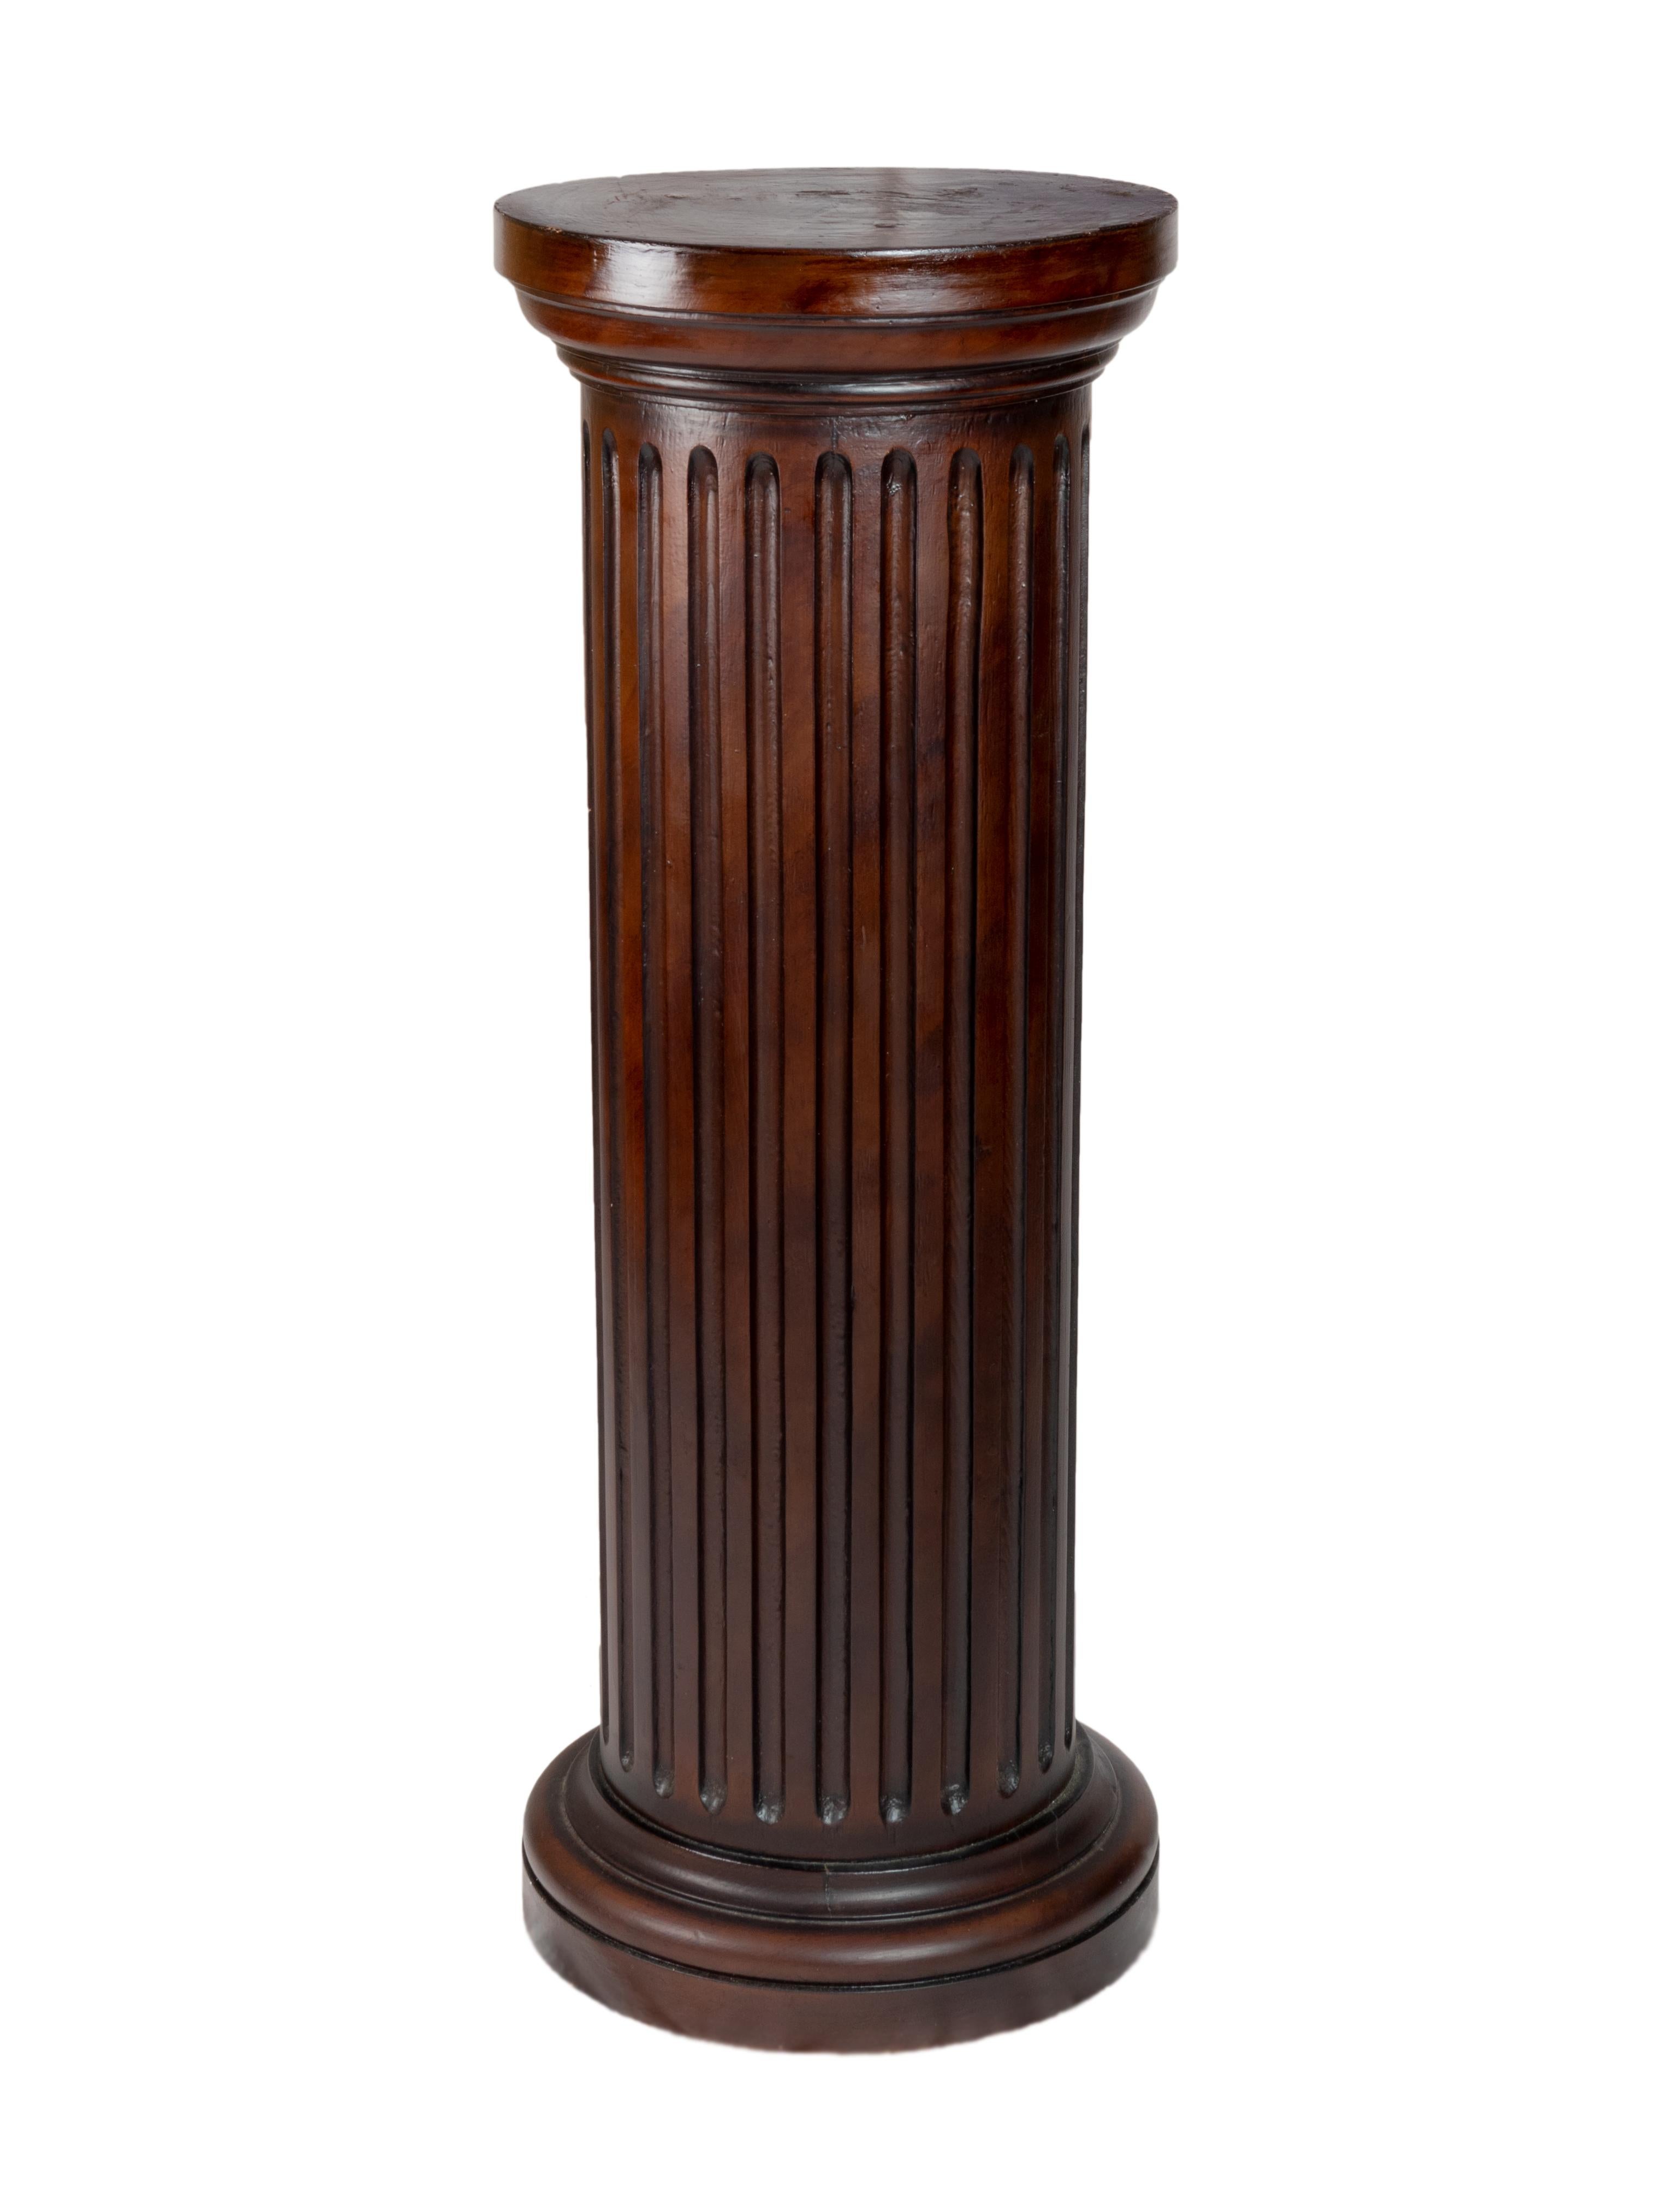 Paire de piliers classiques en bois laqué de couleur brun rougeâtre, finition doucine, détails cannelés et corniche horizontale, colonnes d'inspiration dorique.  

Hauteur 39,52 in (100,4 cm)
Diamètre 14,76 in (37,5 cm)